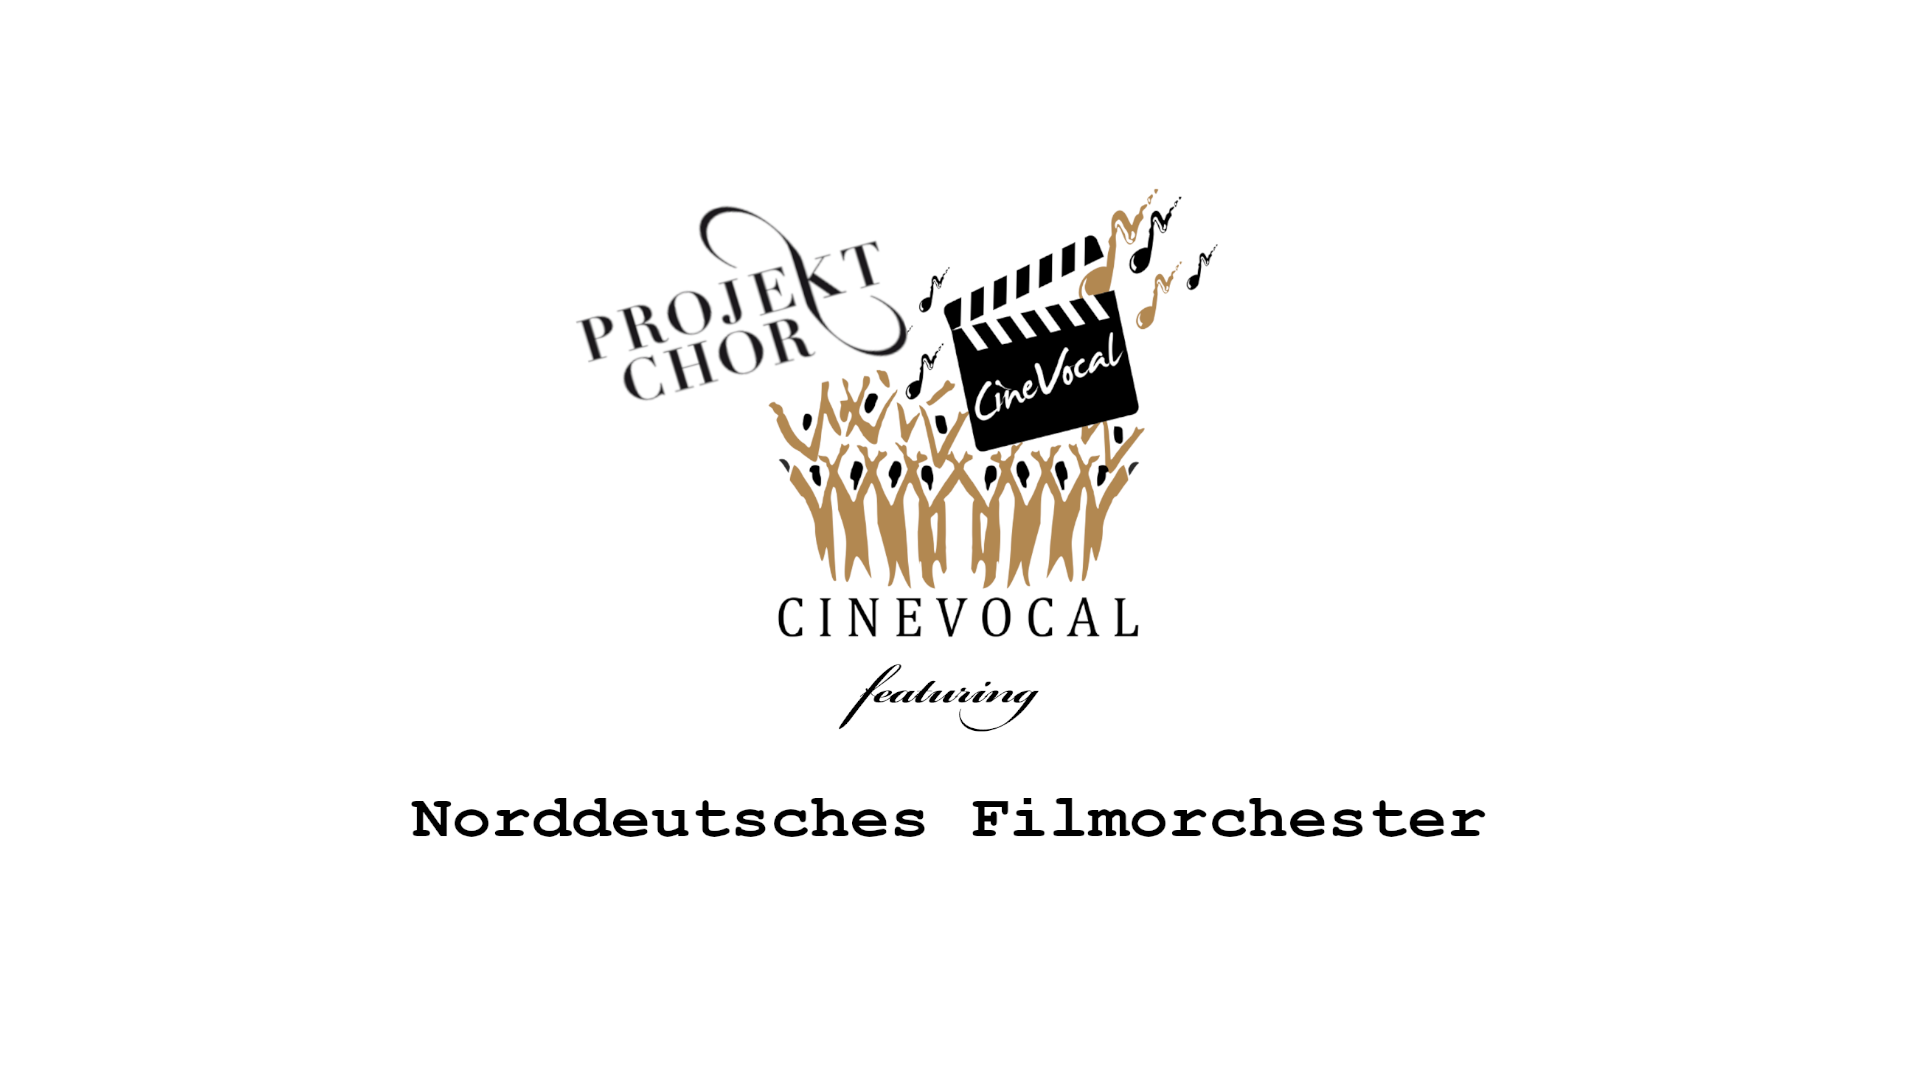 Projektchor CineVocal featuring Norddeutsches Filmorchester